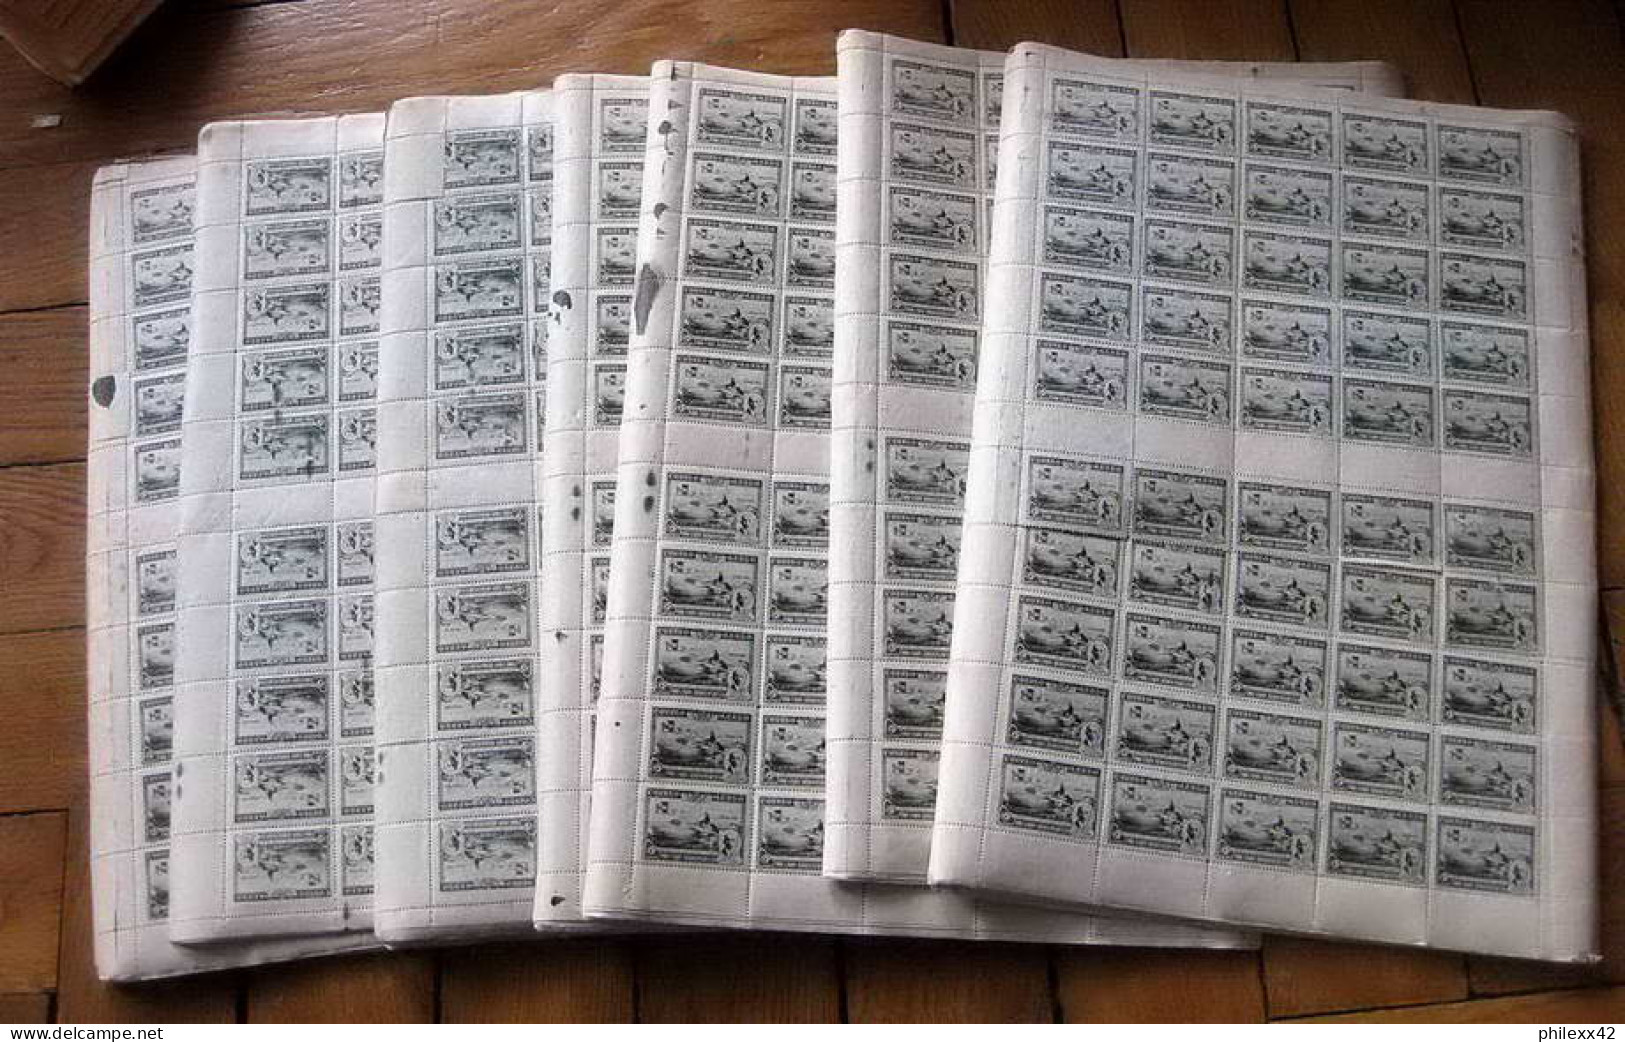 74-Enorme stock de timbres neuf ** d'espagne spain exposition de seville 1930 dont airmail cote + de 370 000 euros